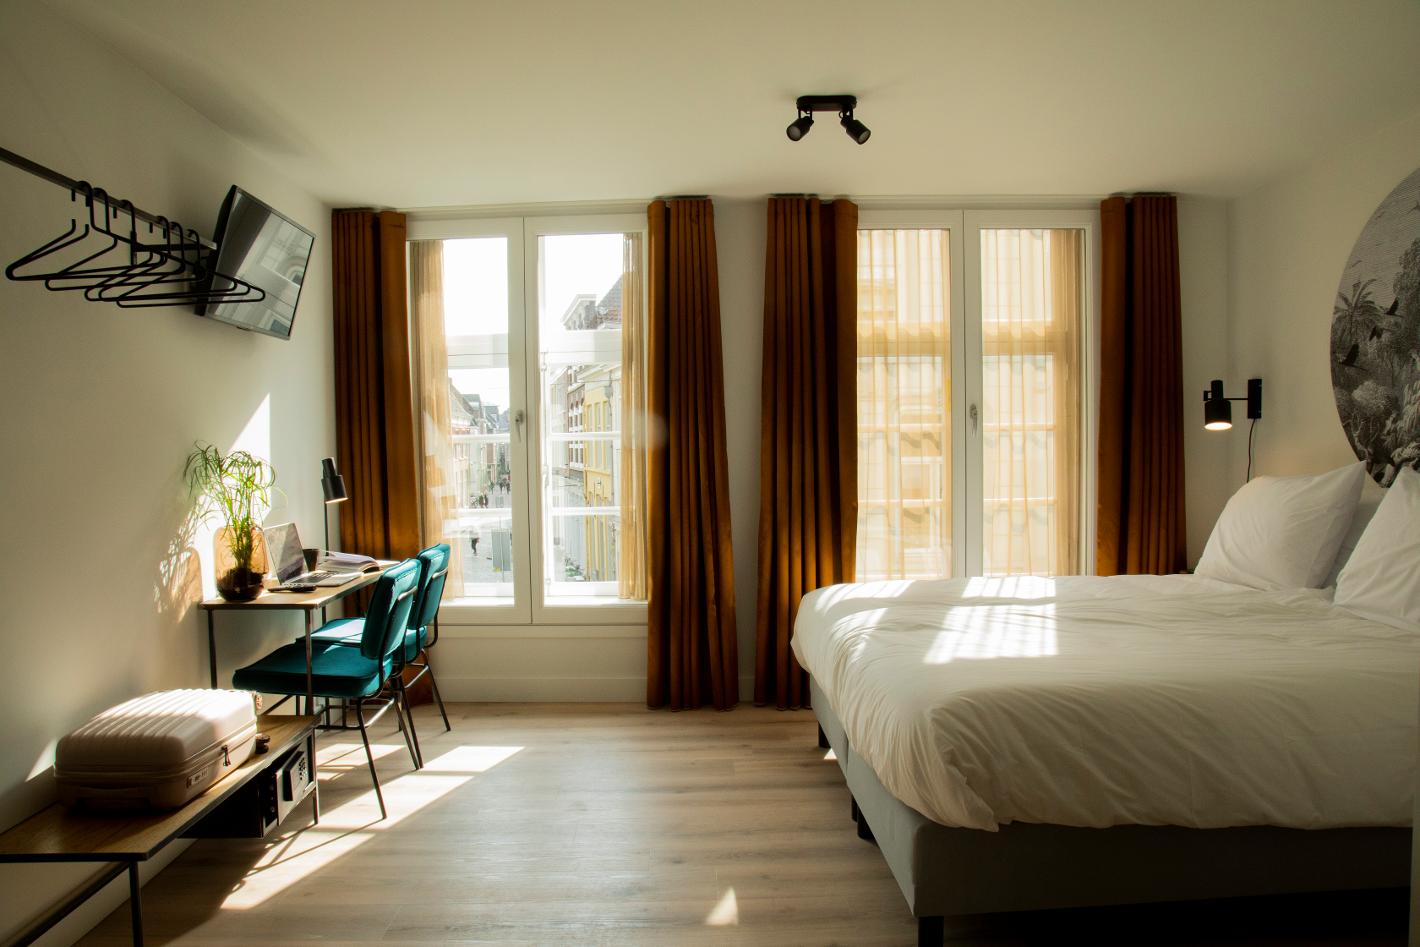 Photo Hotel Haverkist in Den Bosch, Sleep, Sleep - #1